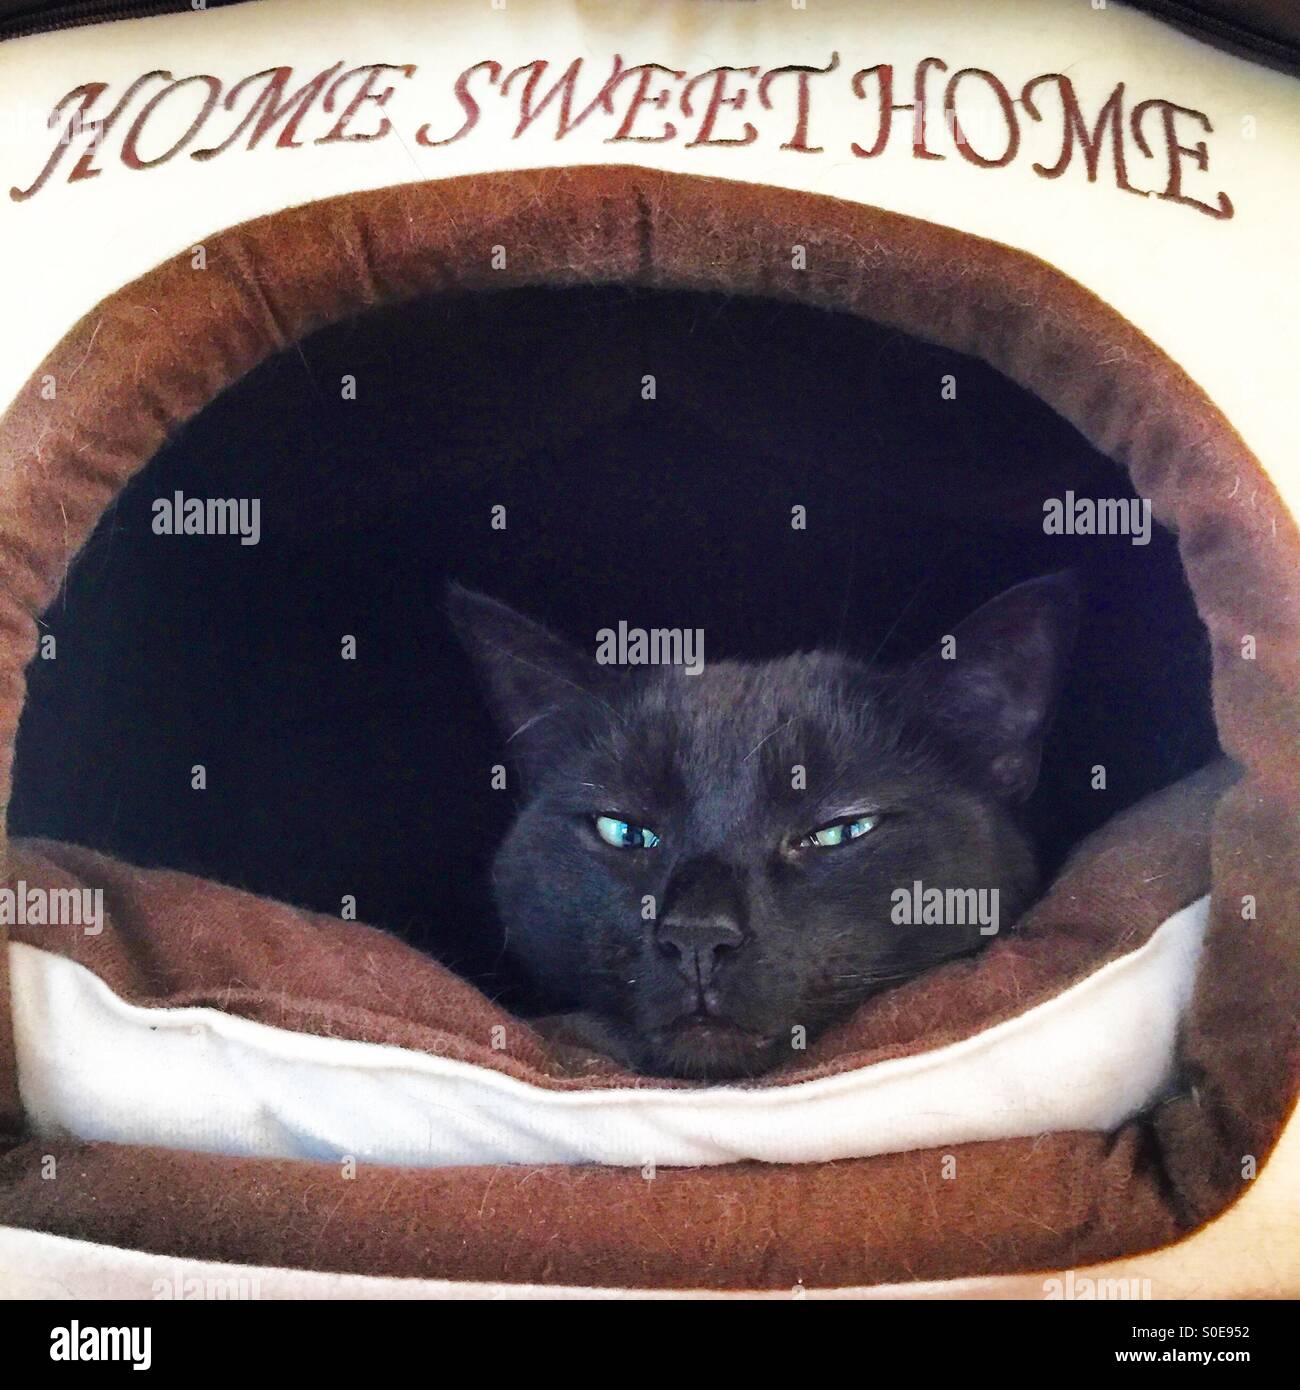 Cat sentando en la cama con la etiqueta home sweet home. Foto de stock